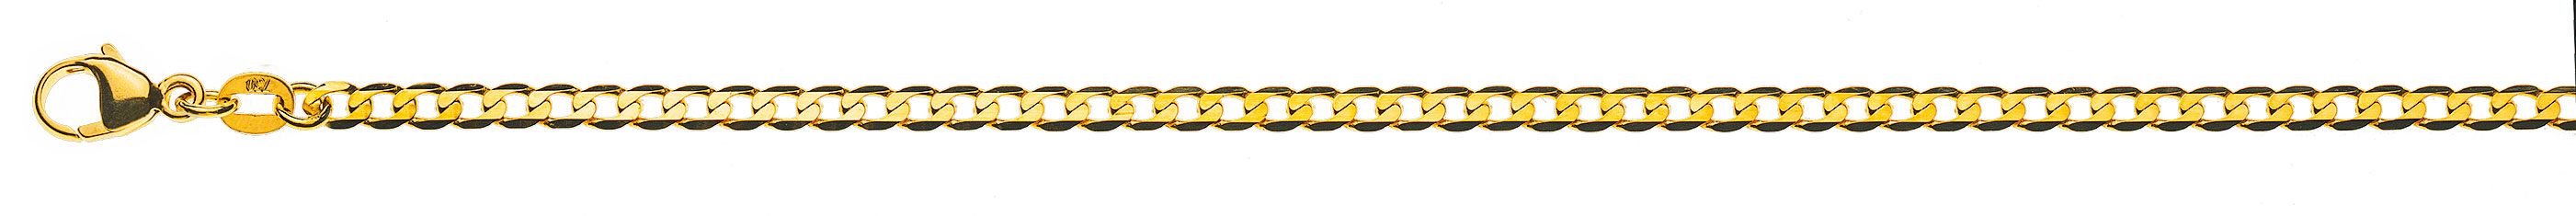 AURONOS Prestige Halskette Gelbgold 18K Panzerkette extraflach diamantiert 42cm 3.1mm